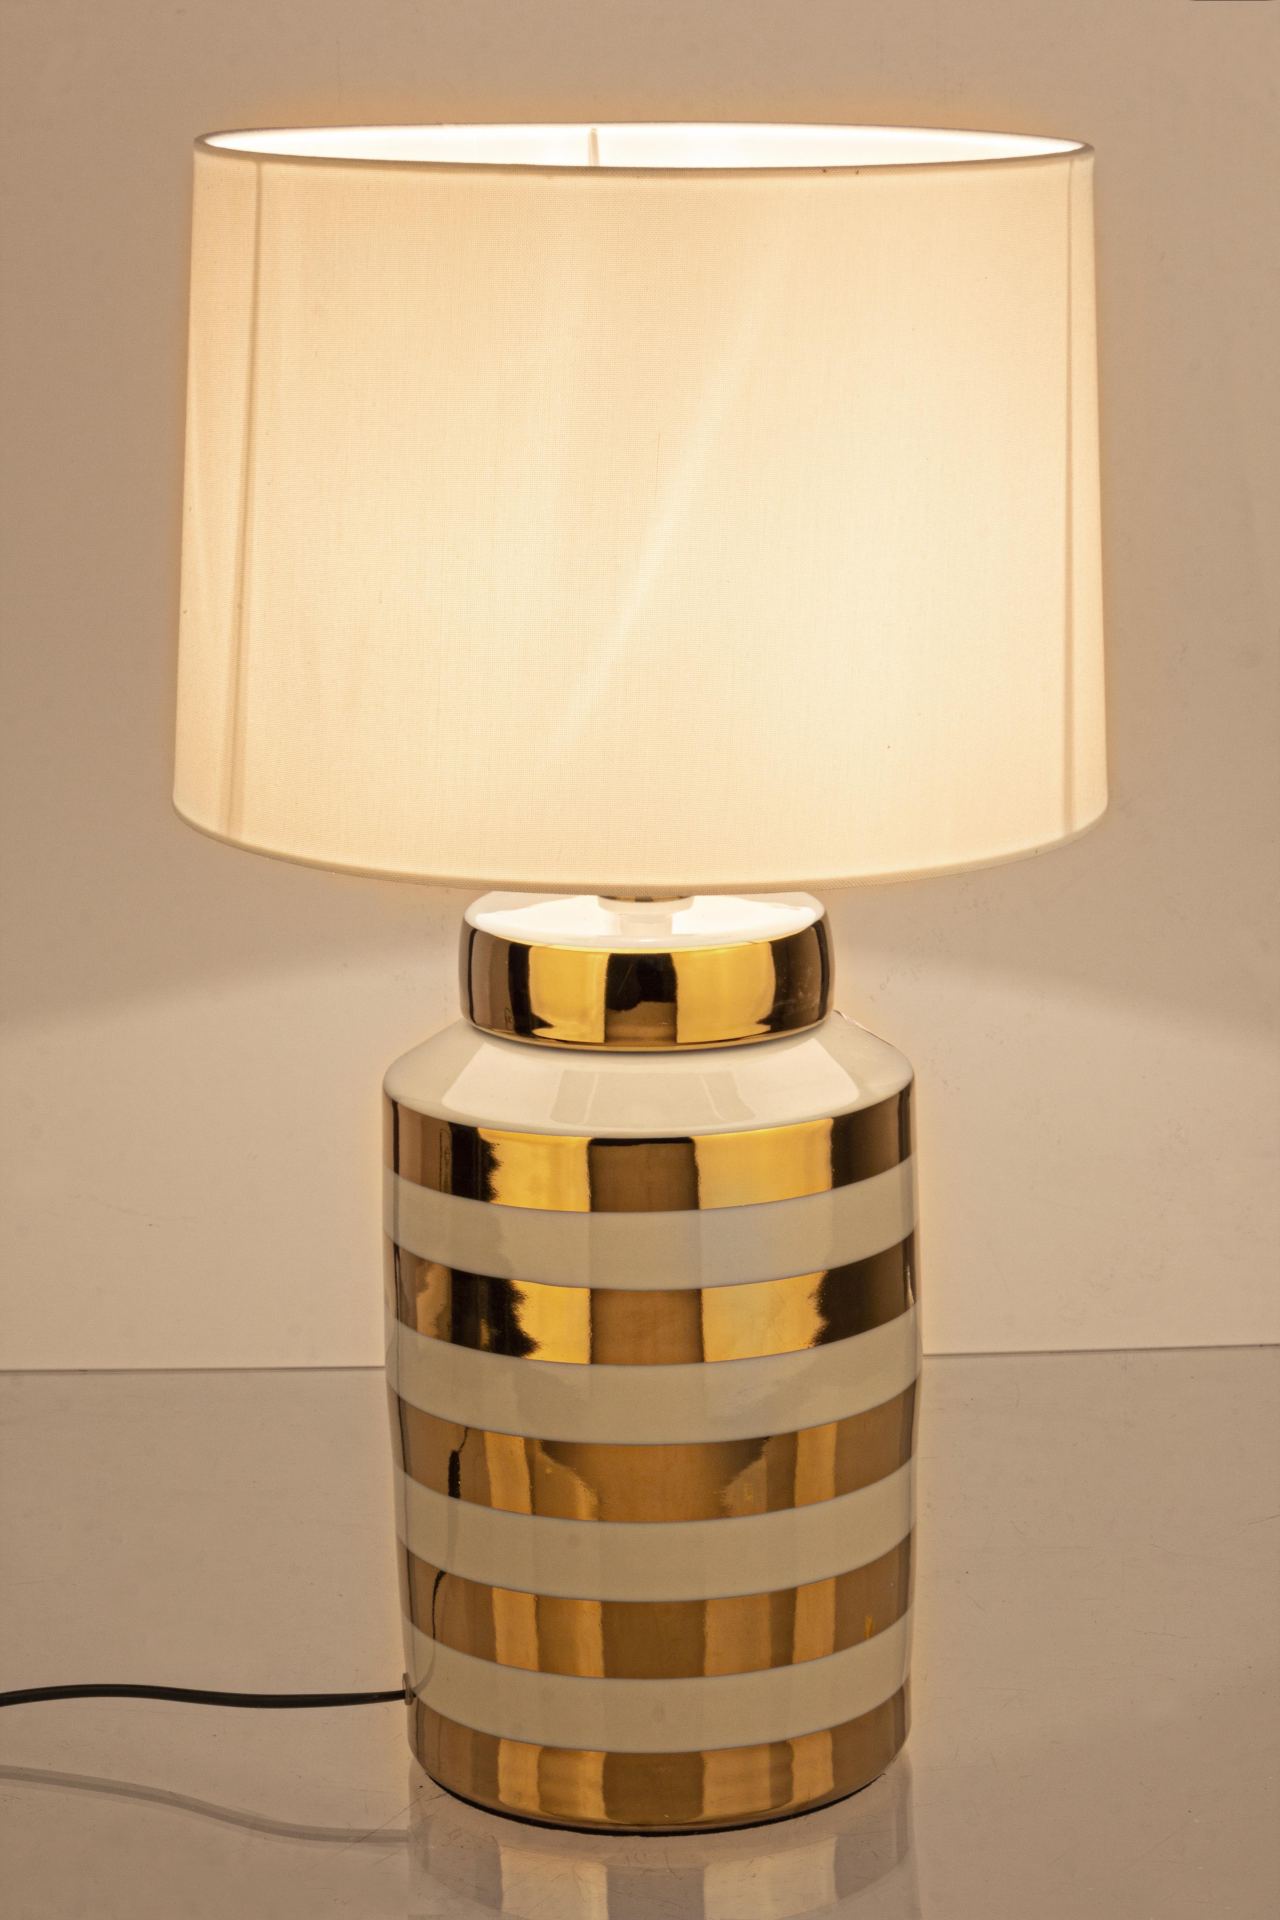 Die Tischleuchte Honey überzeugt mit ihrem klassischen Design. Gefertigt wurde sie aus Porzellan, welches einen goldenen Farbton besitzt. Die Lampenschirme ist aus Polyester und hat eine weiße Farbe. Die Lampe besitzt eine Höhe von 63 cm.